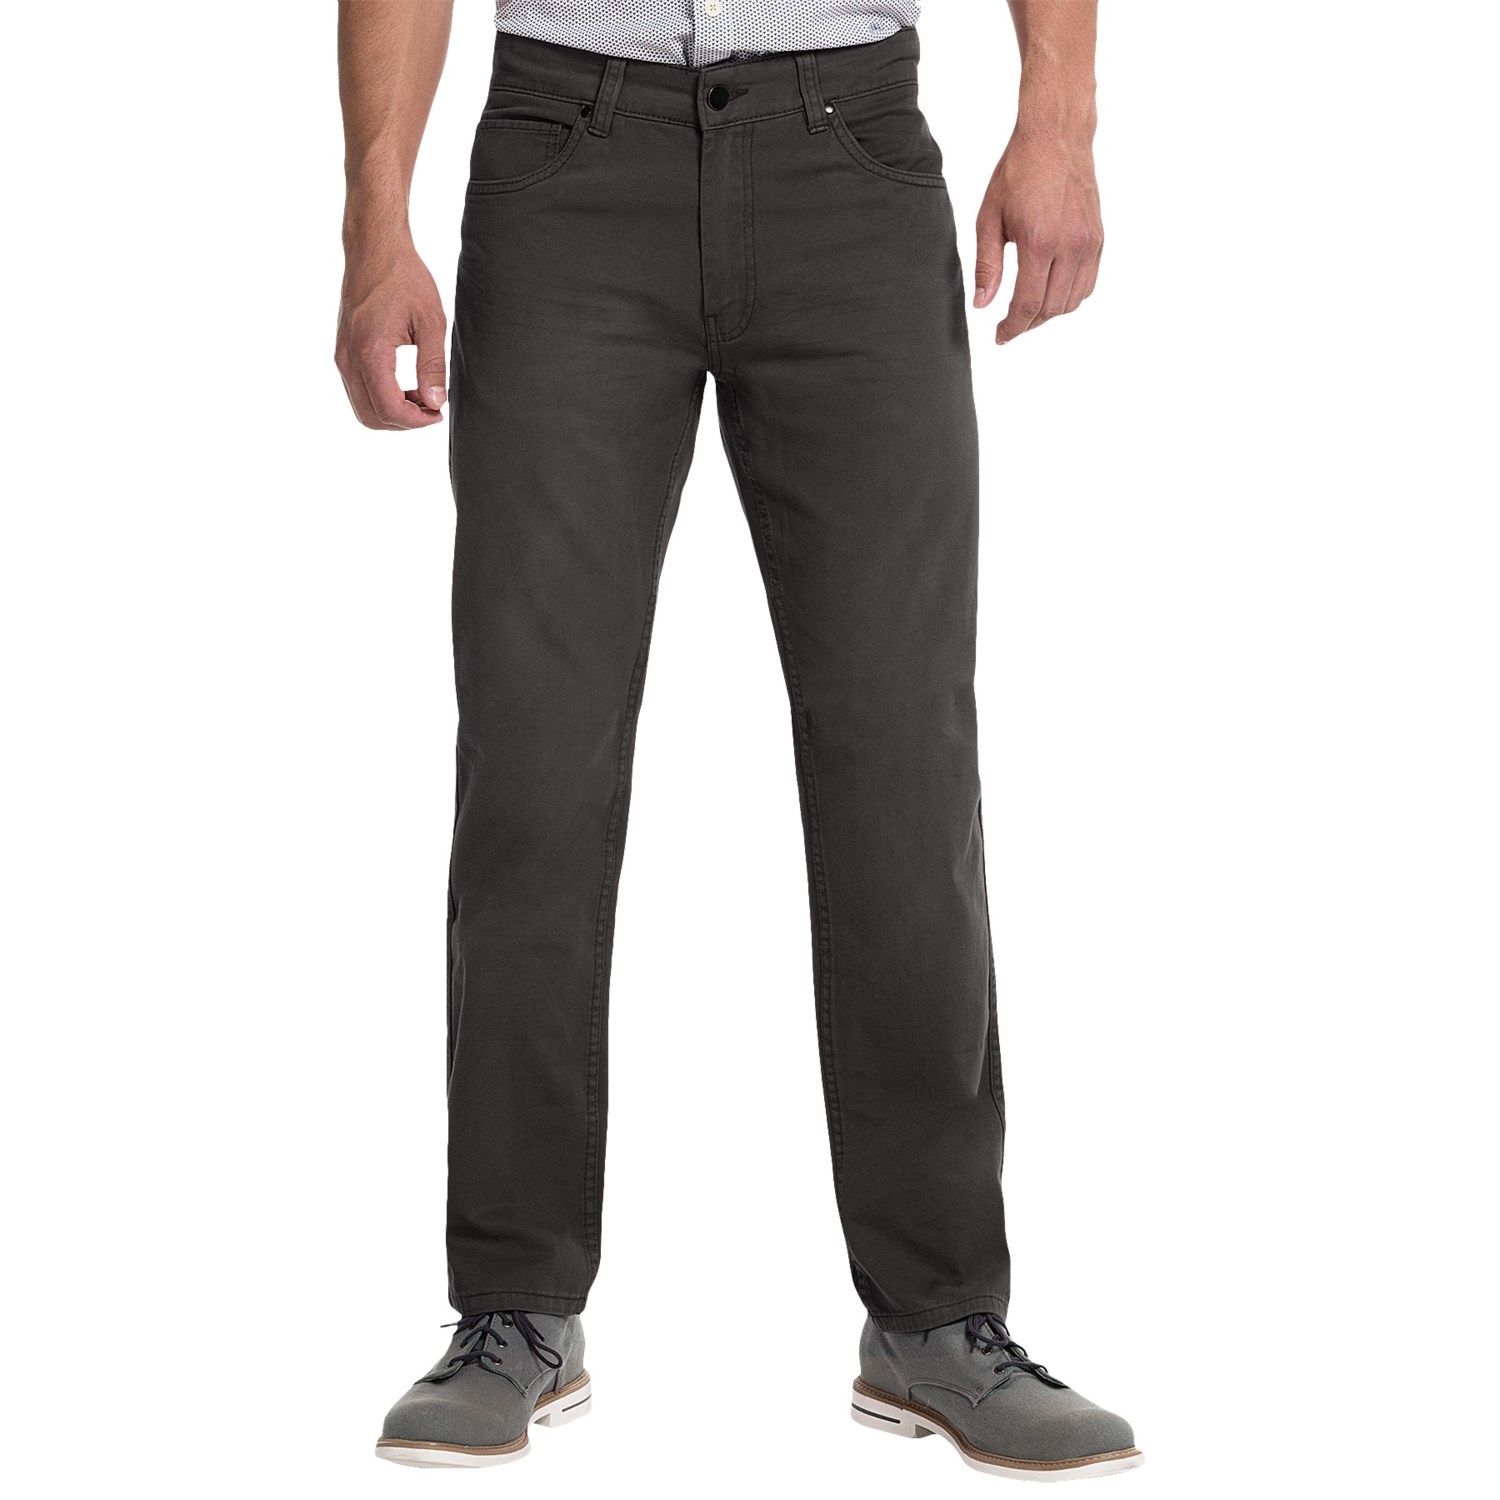 JKL 5-Pocket Twill Pants (For Men) - Save 71%